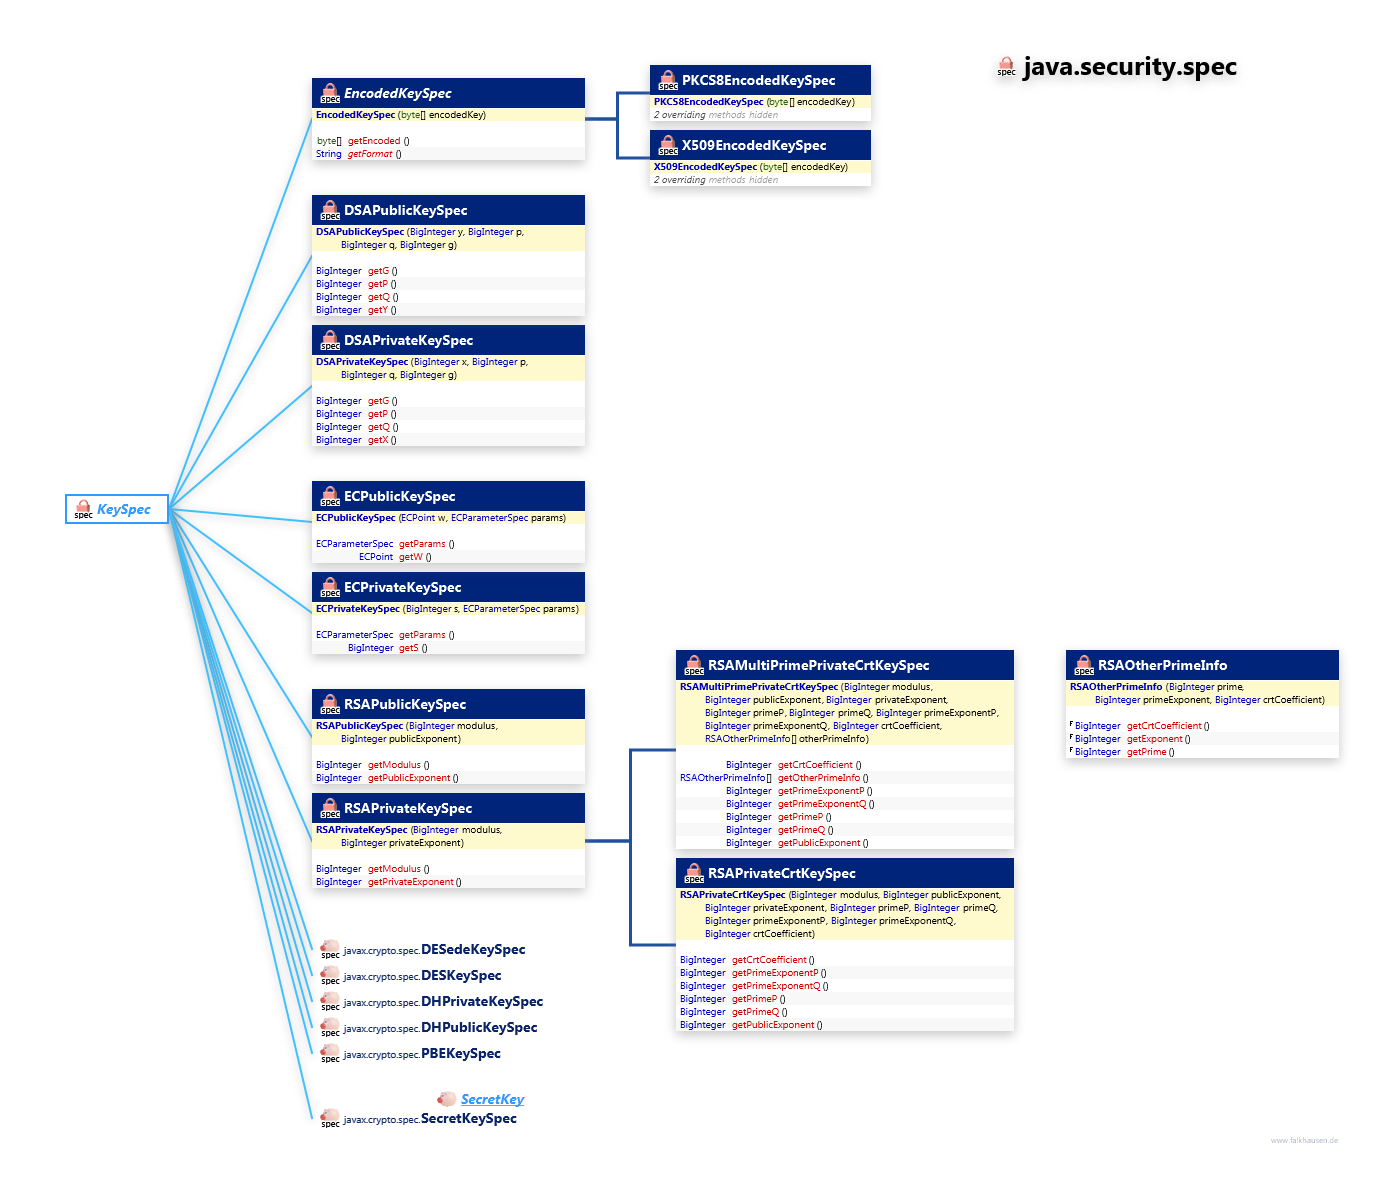 java.security.spec KeySpec class diagram and api documentation for Java 8